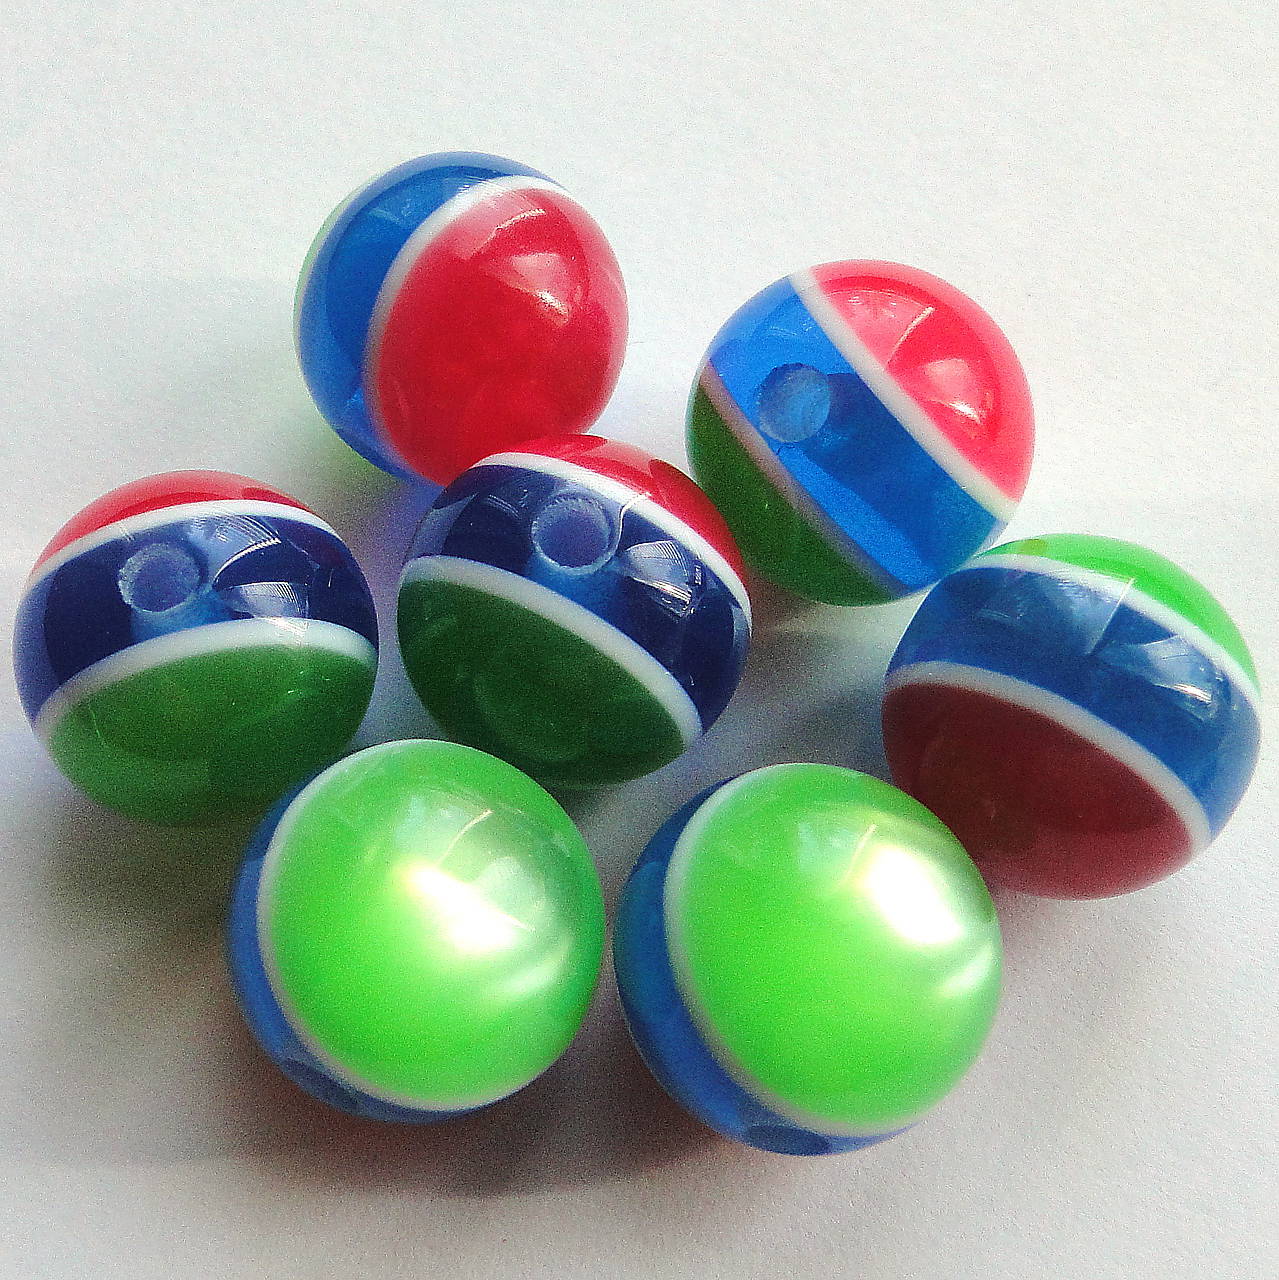 Živicové korálky 14mm-1ks (zelená/modrá/červená)